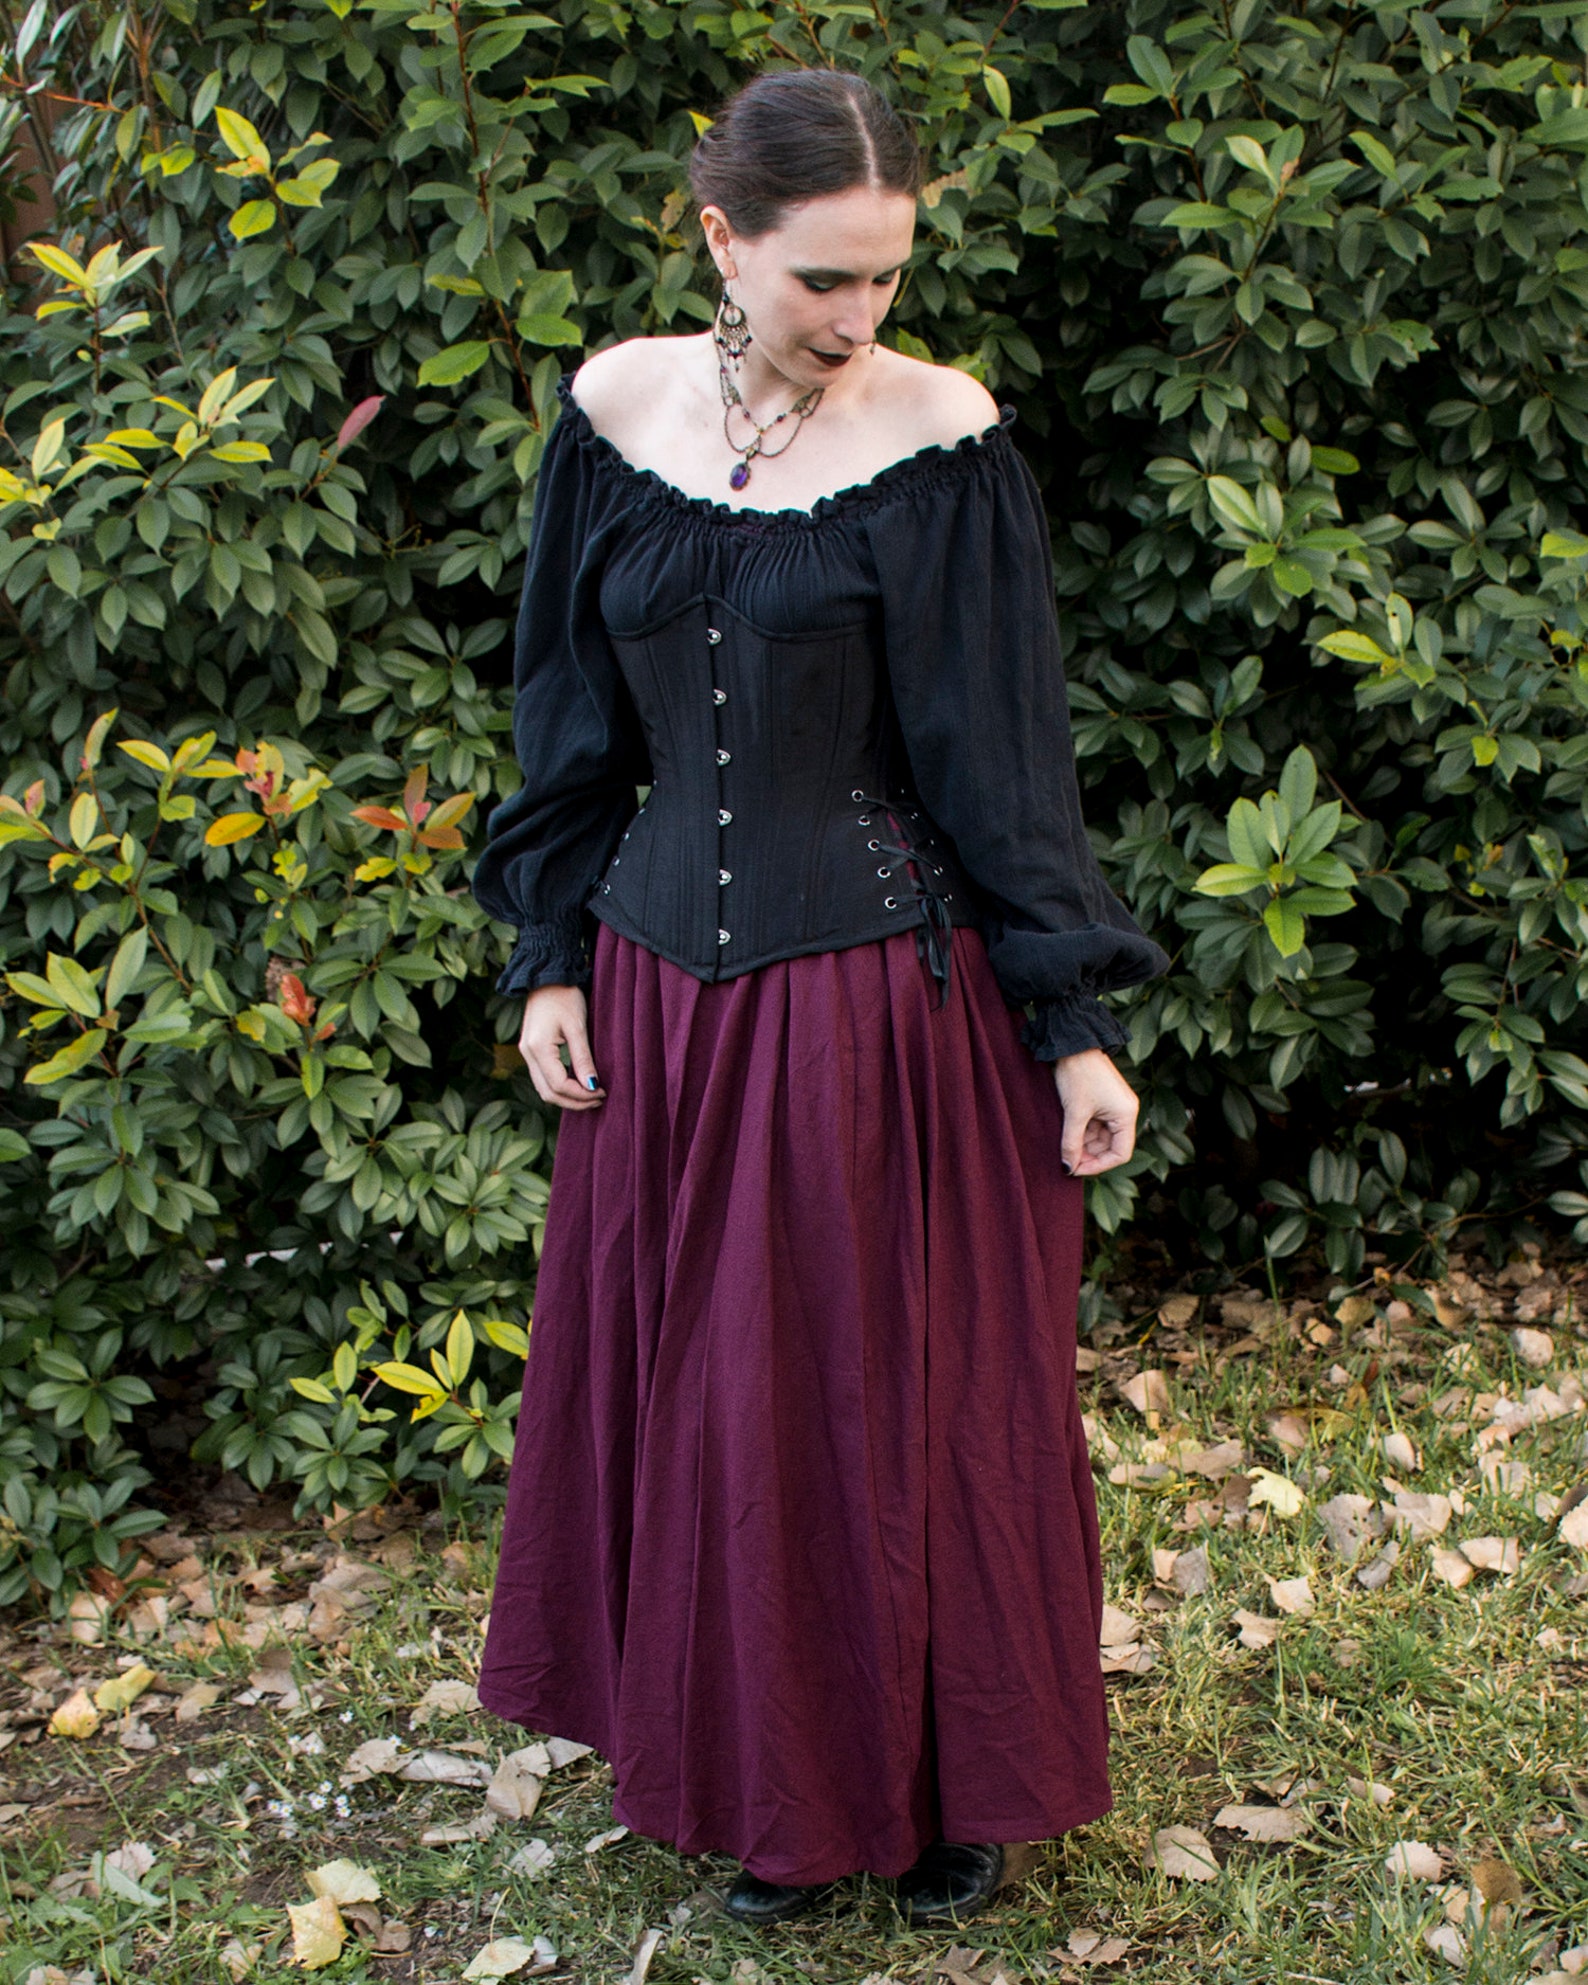 Dark Purple Linen Renaissance Skirt Ren Faire Garb Womens | Etsy